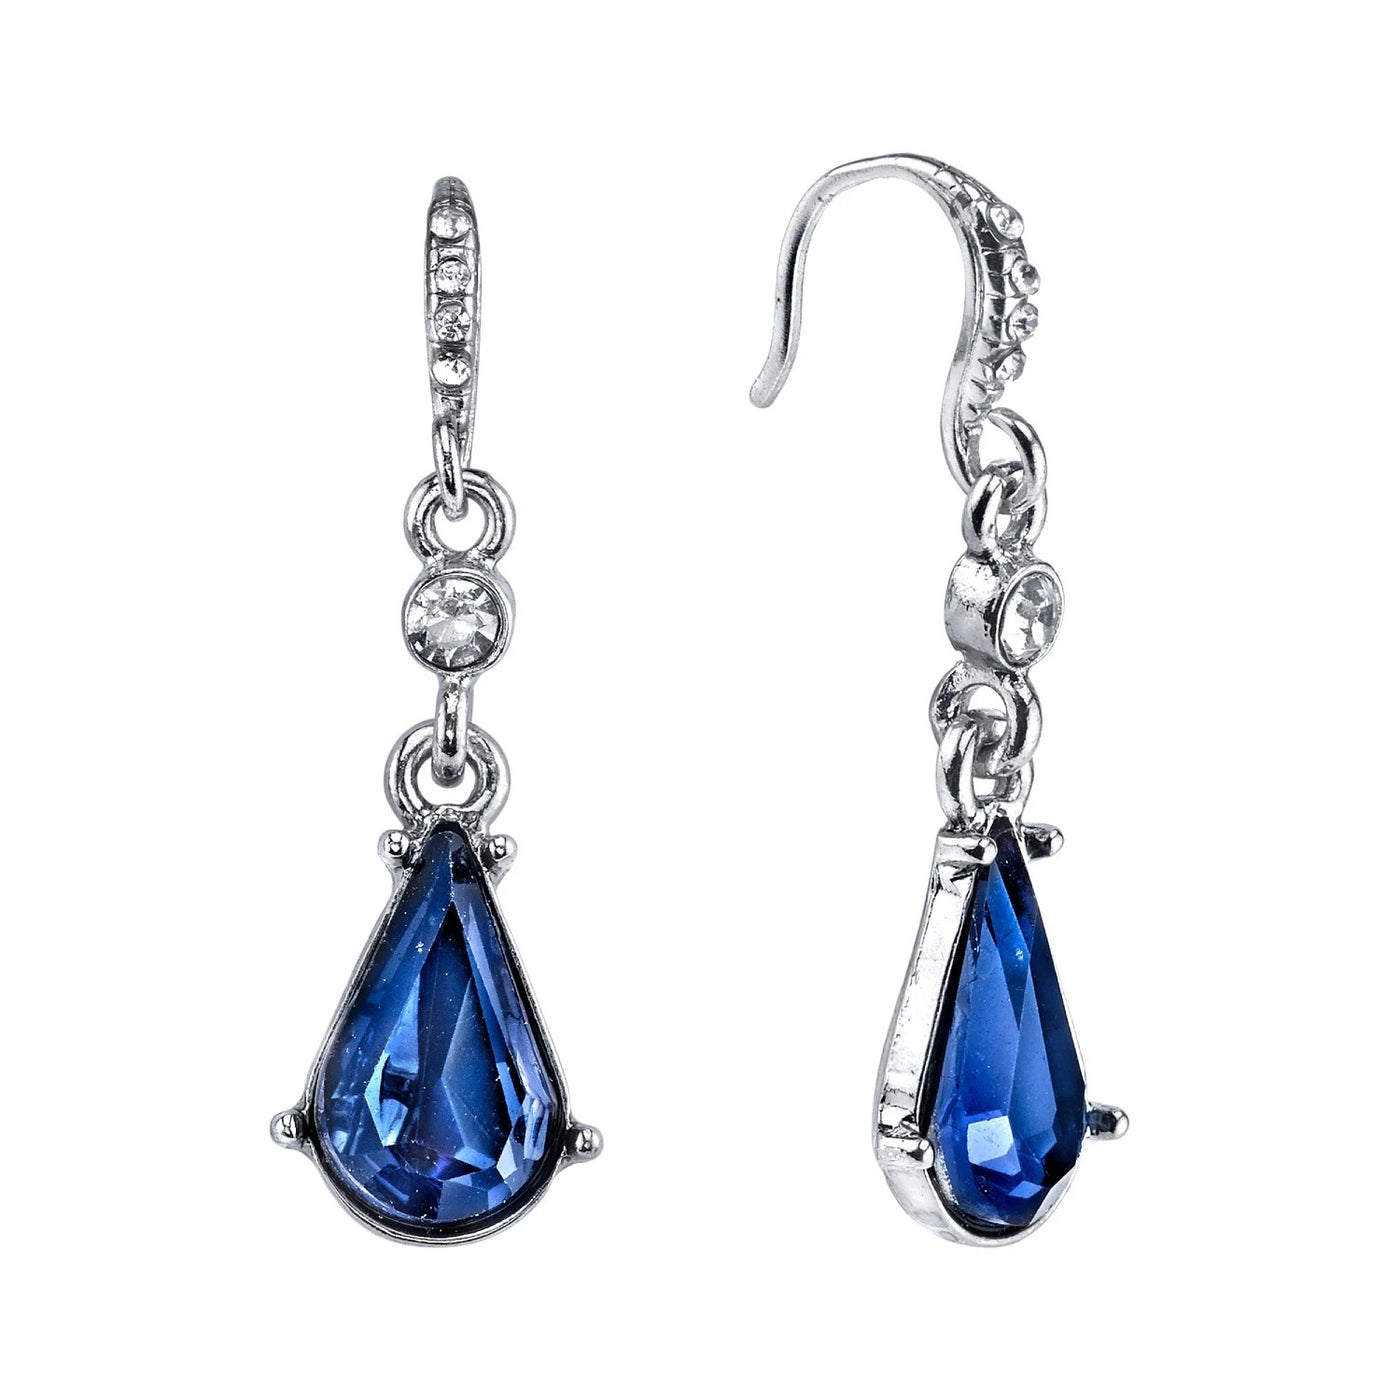 Downton Abbey Silver Tone Blue Crystal Drop Earrings by 1928 Jewelry